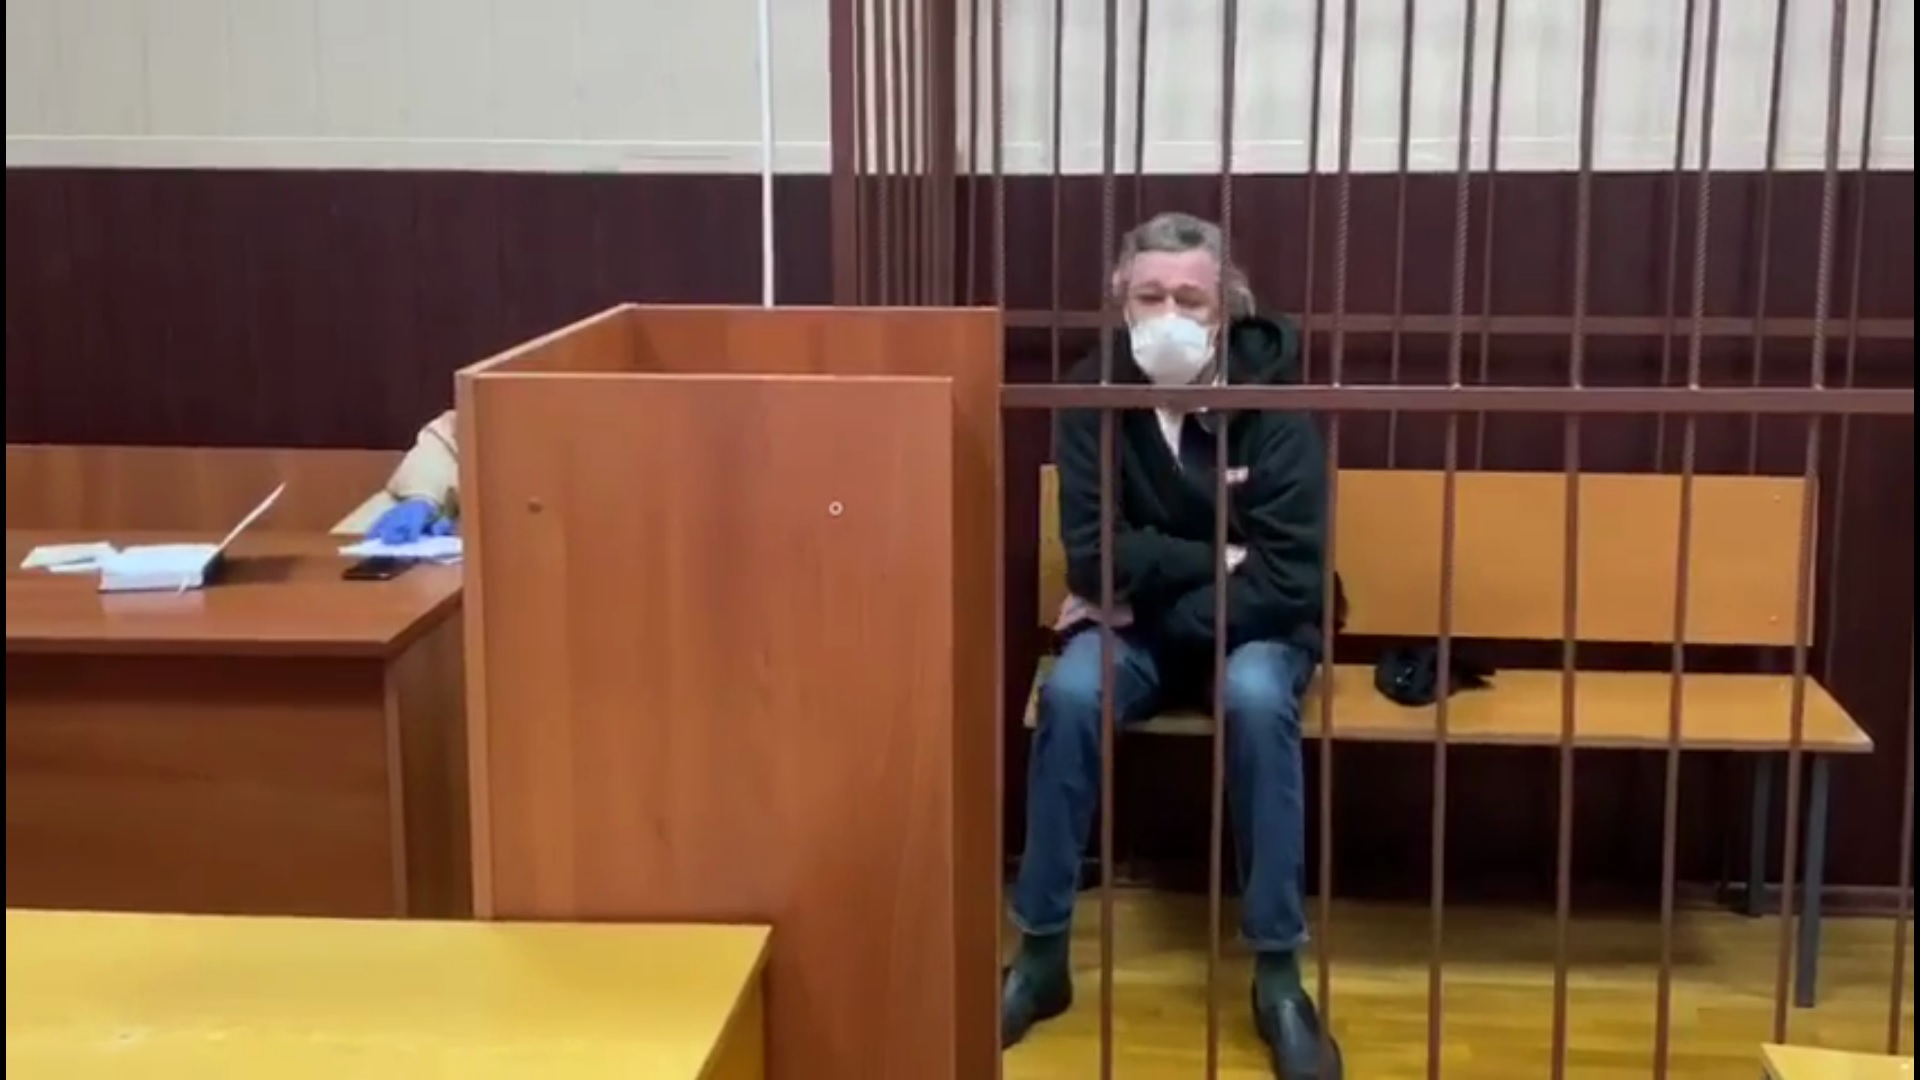 Как проходило задержание Михаила Ефремова. В деле об аварии новые подробности - наркотики, скорая, арест